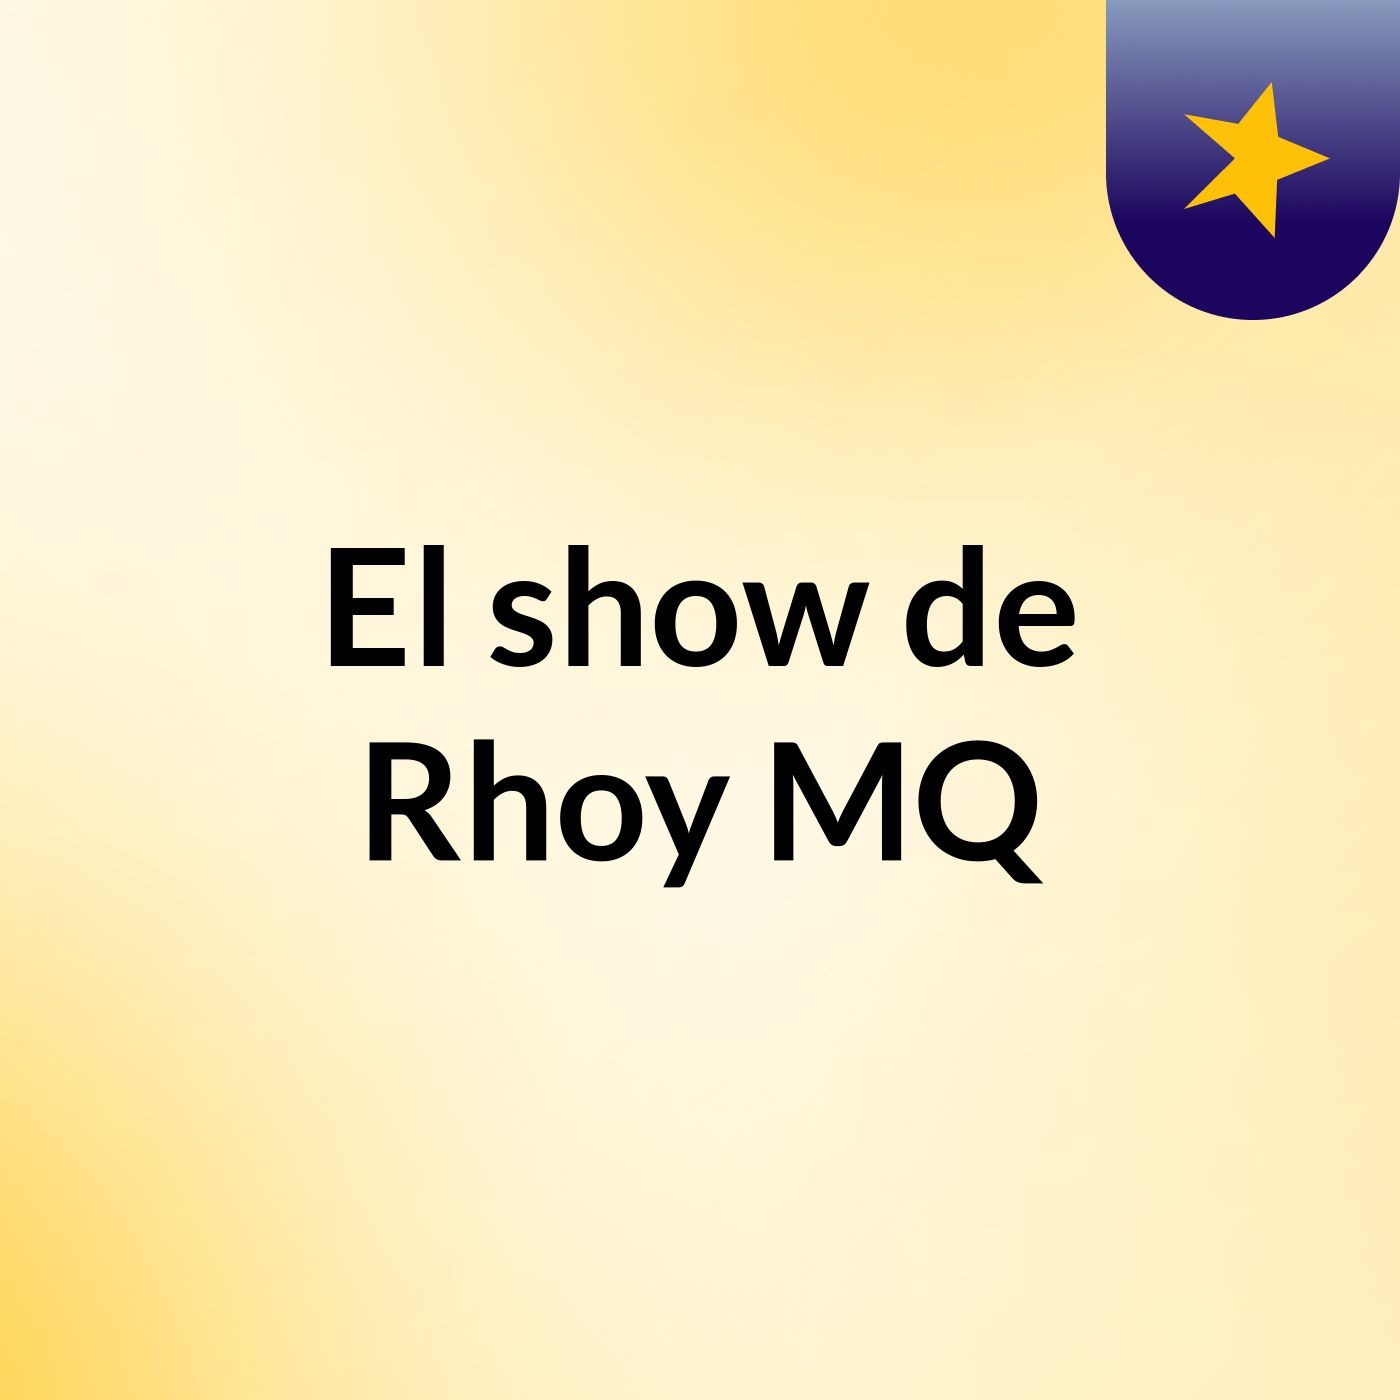 Episodio 2 - El show de Rhoy MQ